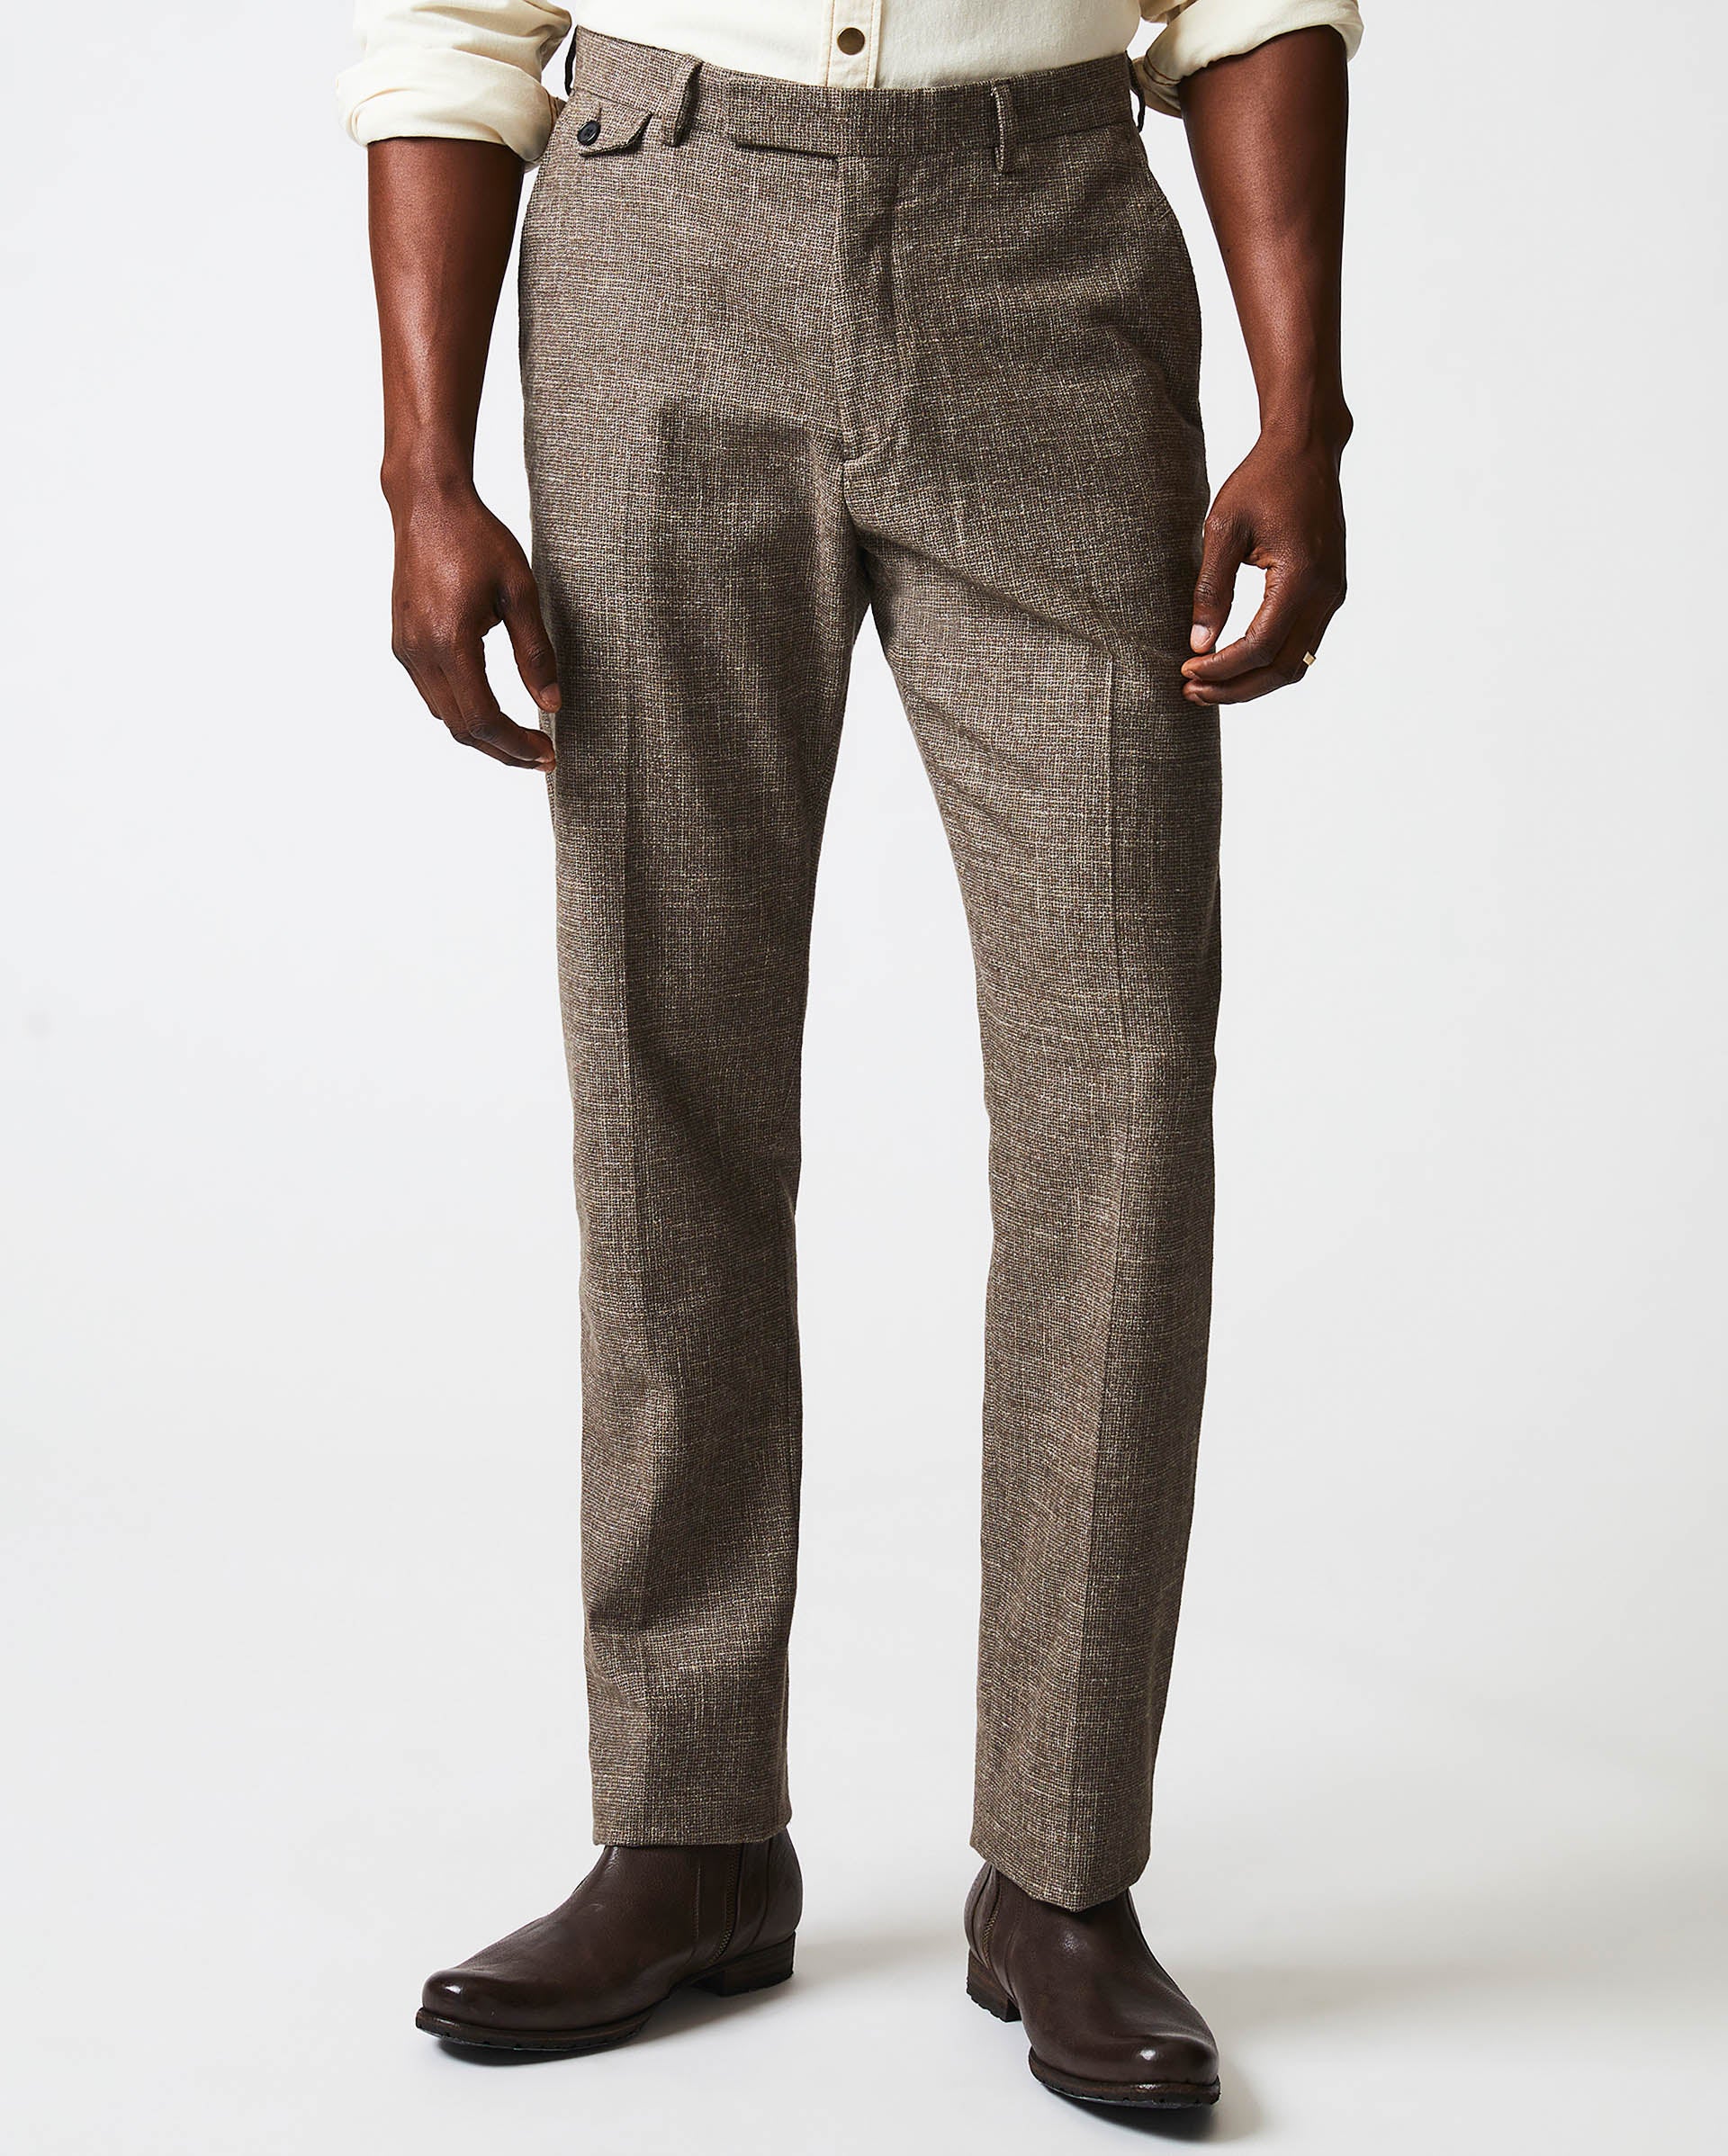 Men Hip hop Style Cotton Linen Trousers, Soft Breathable Solid Color Long  Pants - Walmart.com